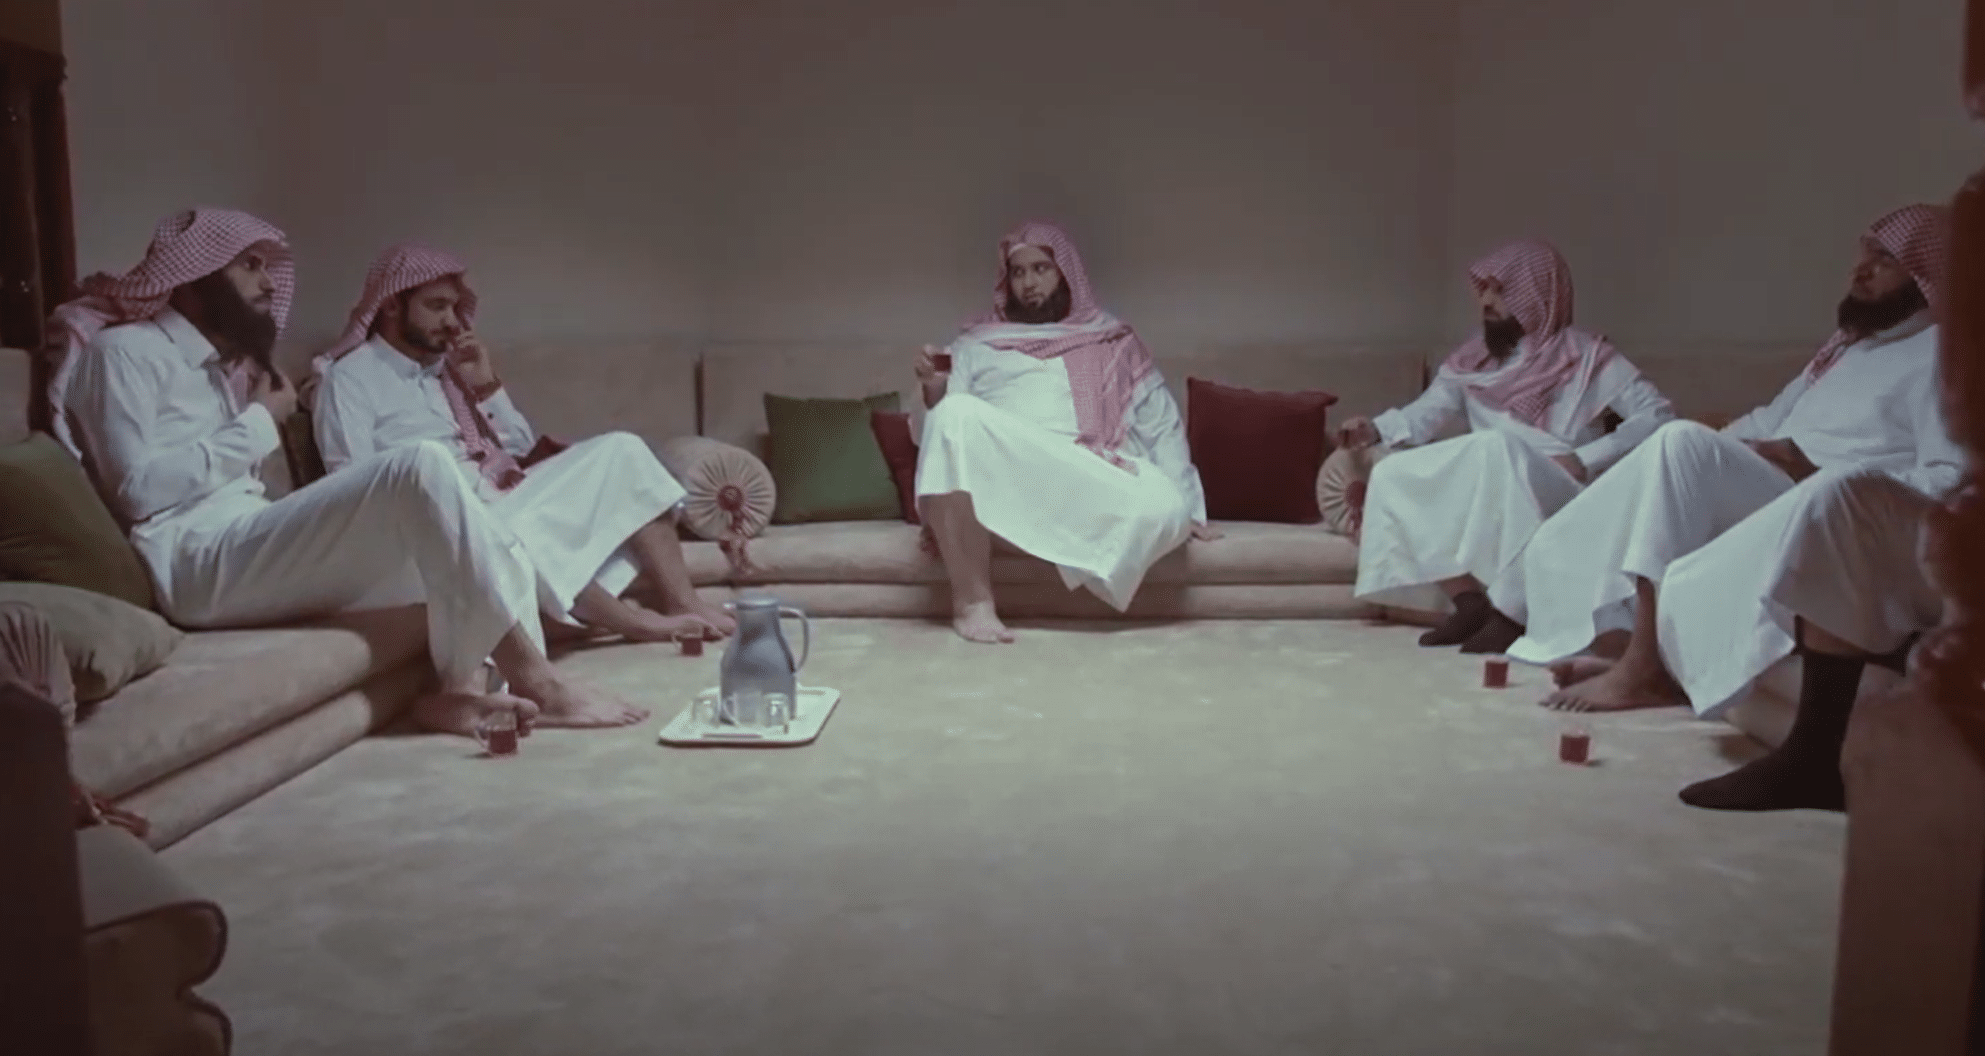 فيلم وسطي نقد مريع للمؤسسة الدينية السعودية